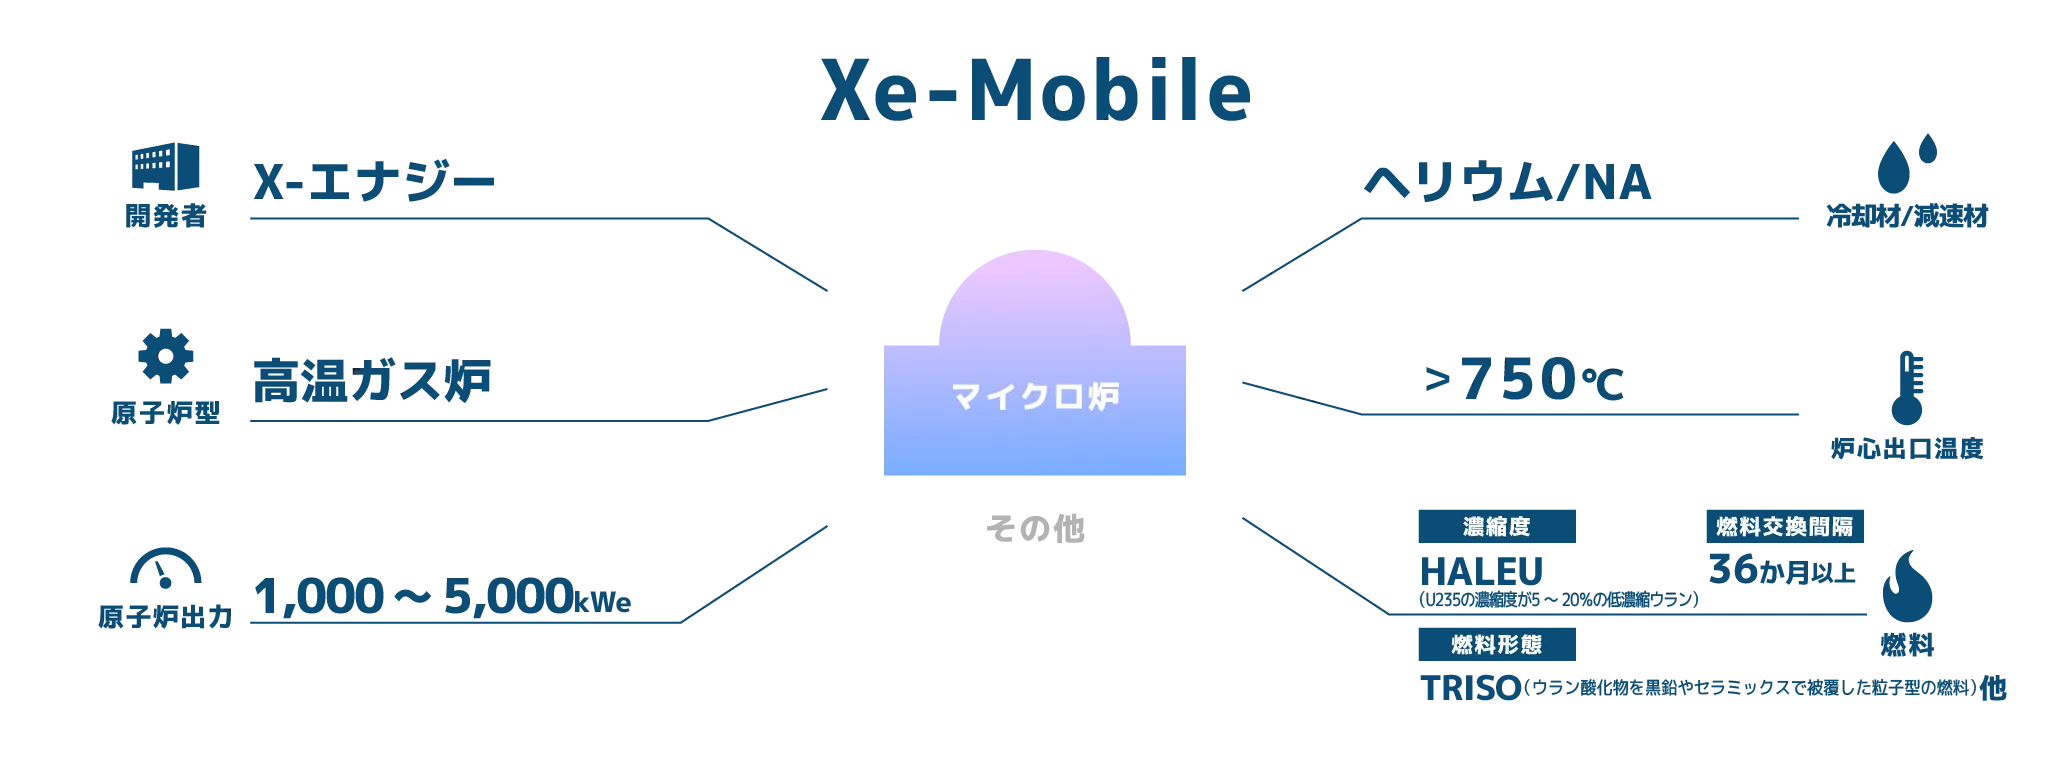 Xe-Mobile